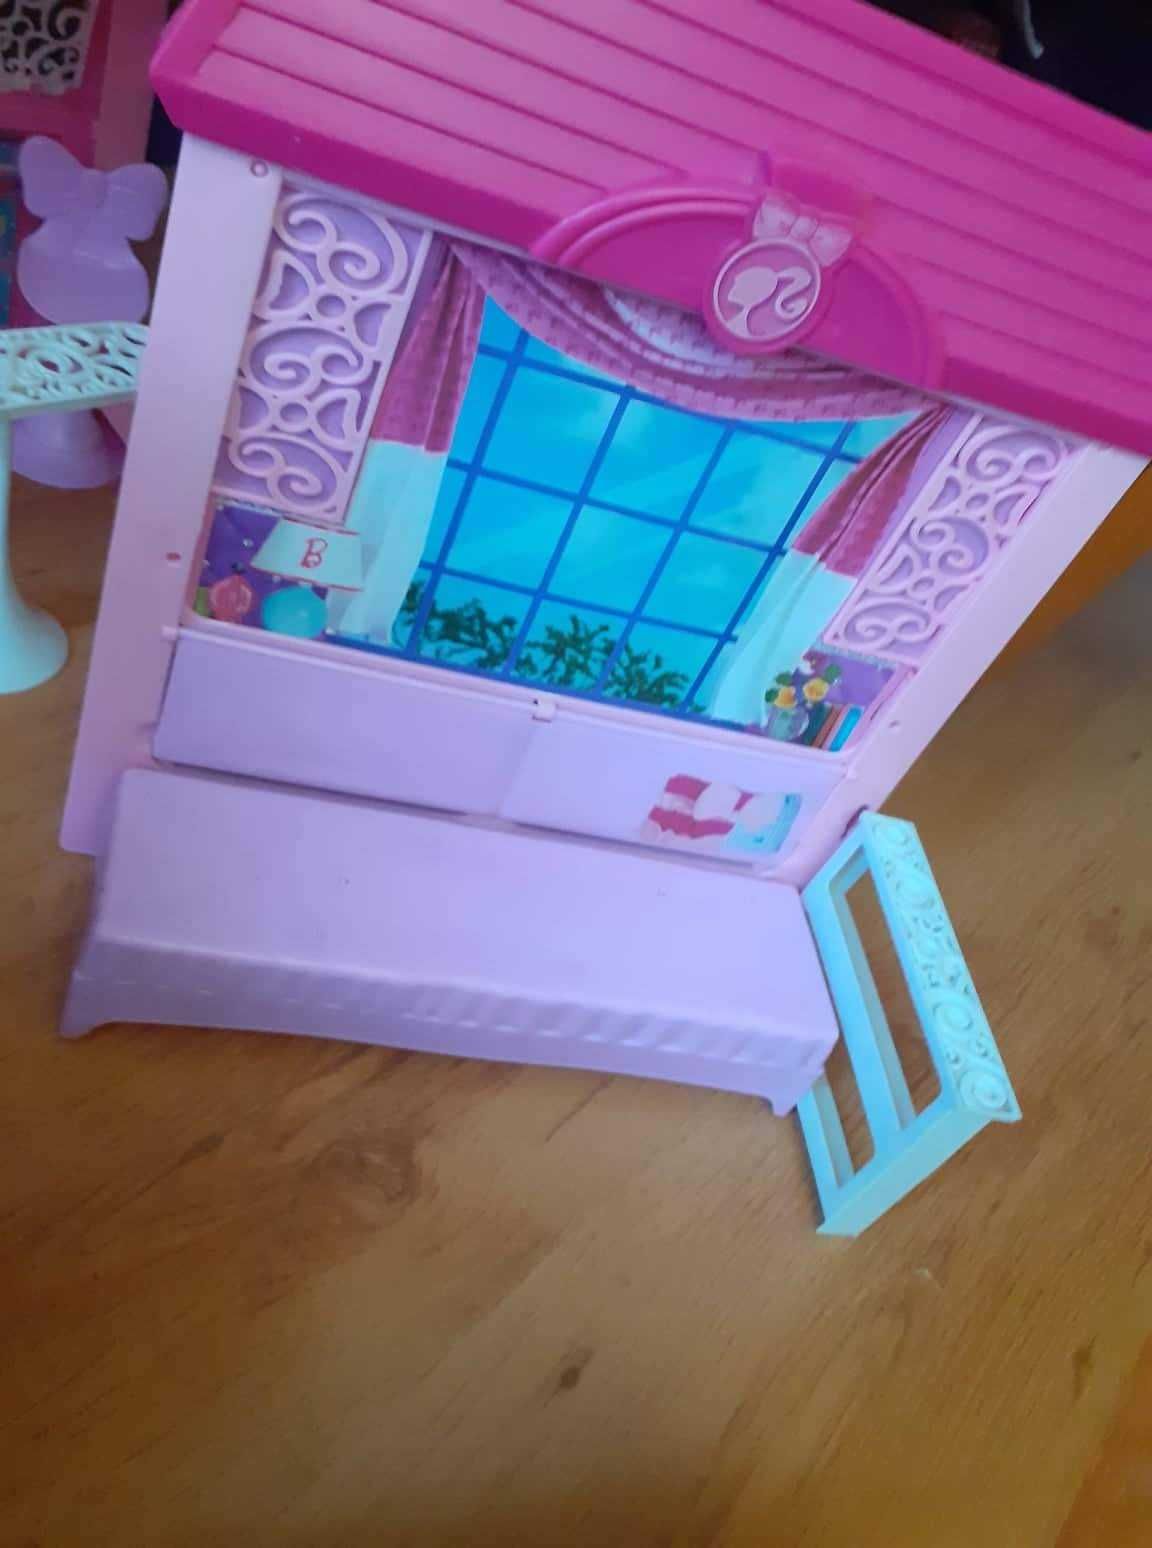 Къща за кукли Barbie